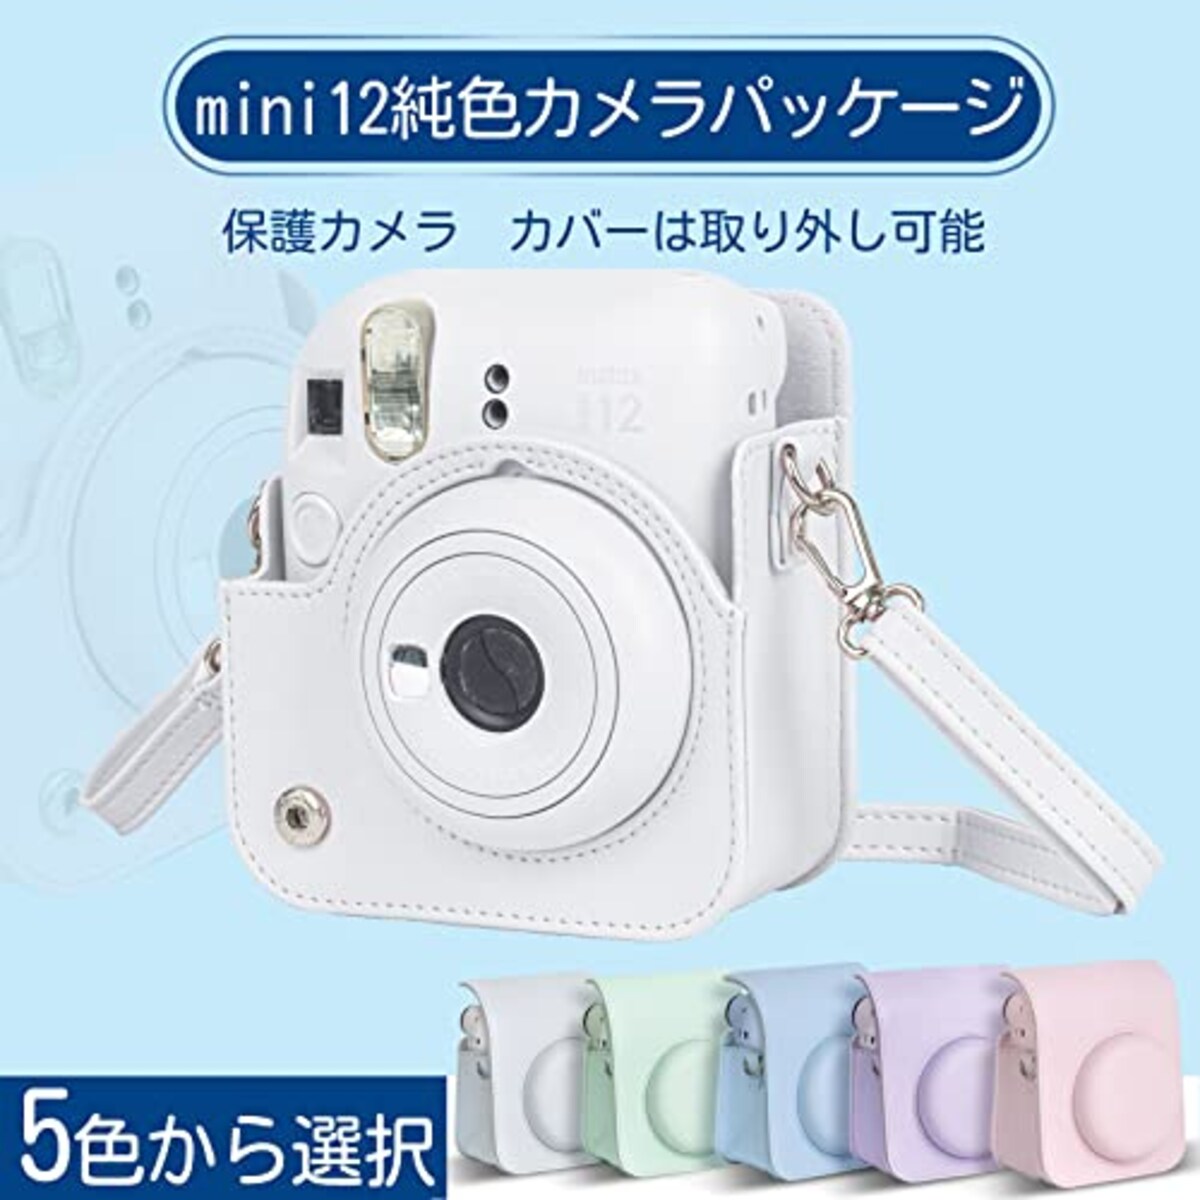  チェキケース instax mini 12用 カメラケース mini12 チェキ カバー Fujifilm チェキ ケース 新モデル 全面保護 傷つけ防止 携帯便利 ショルダーストラップ付き PUレザー (ホワイト)画像4 